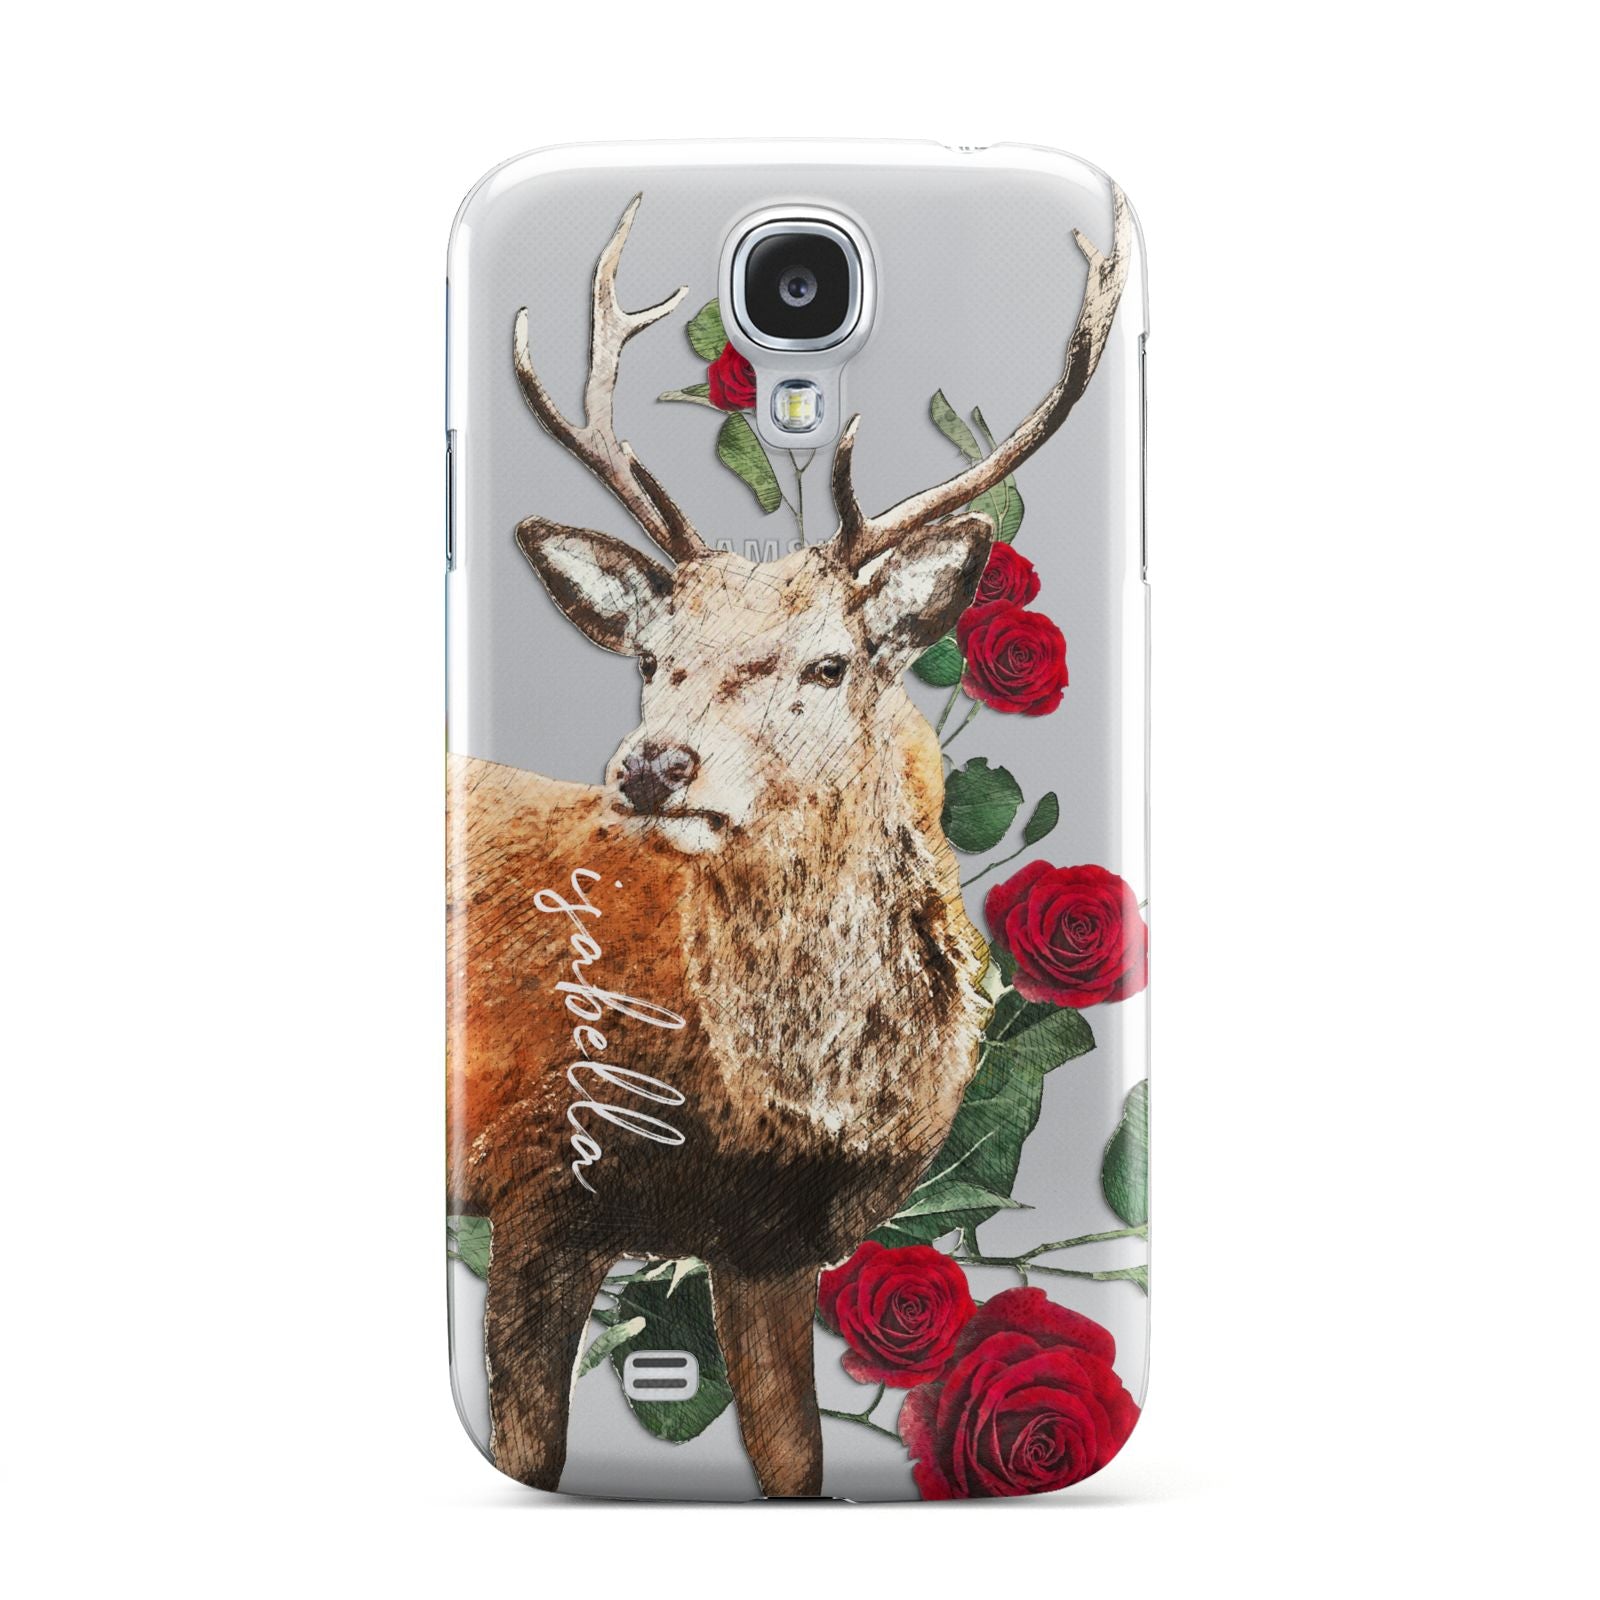 Personalised Deer Name Samsung Galaxy S4 Case